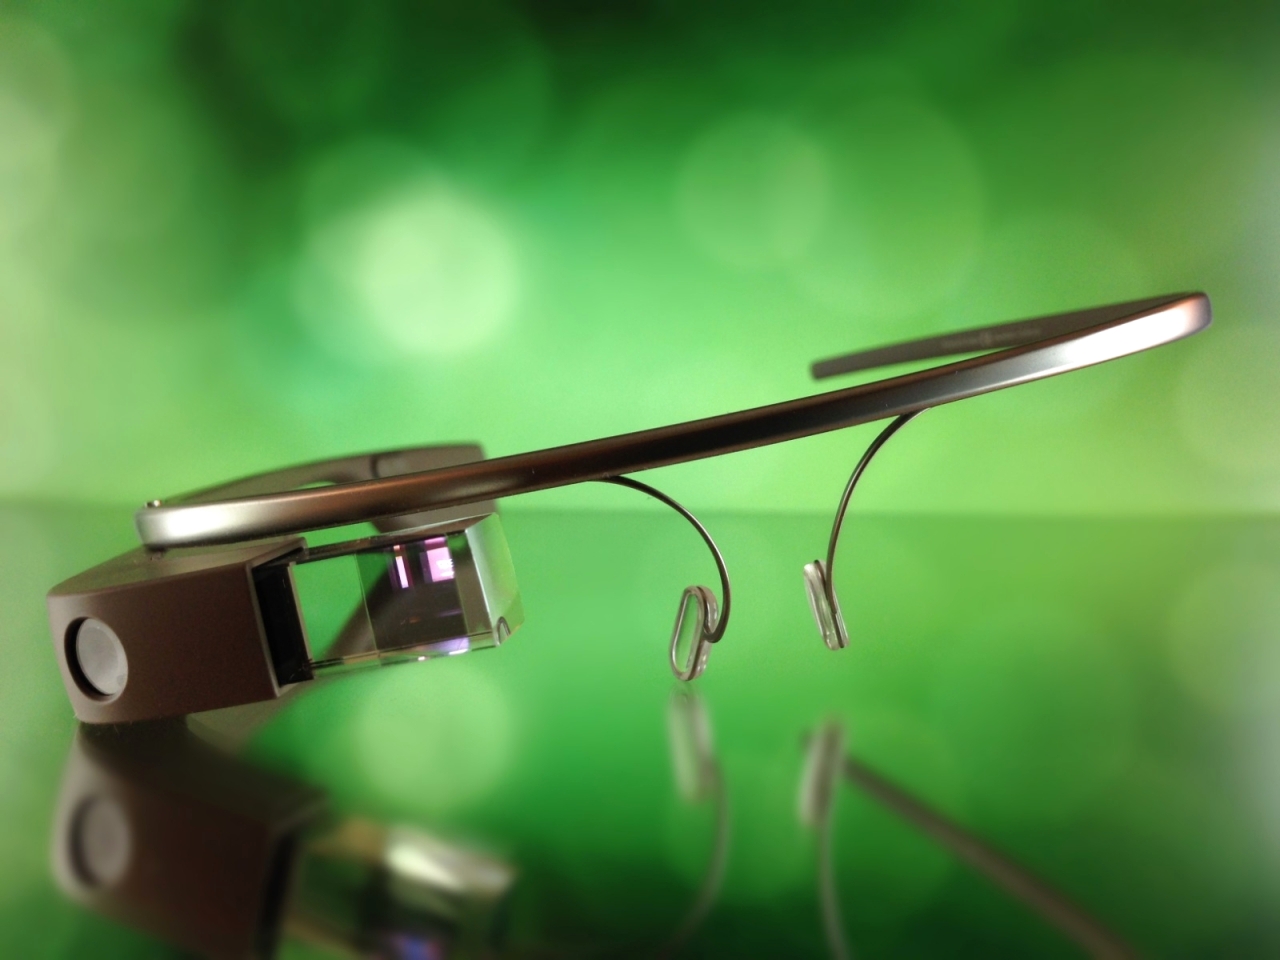 وادي السيليكون يتطلع لتجاوز إخفاقات النظارات الذكية